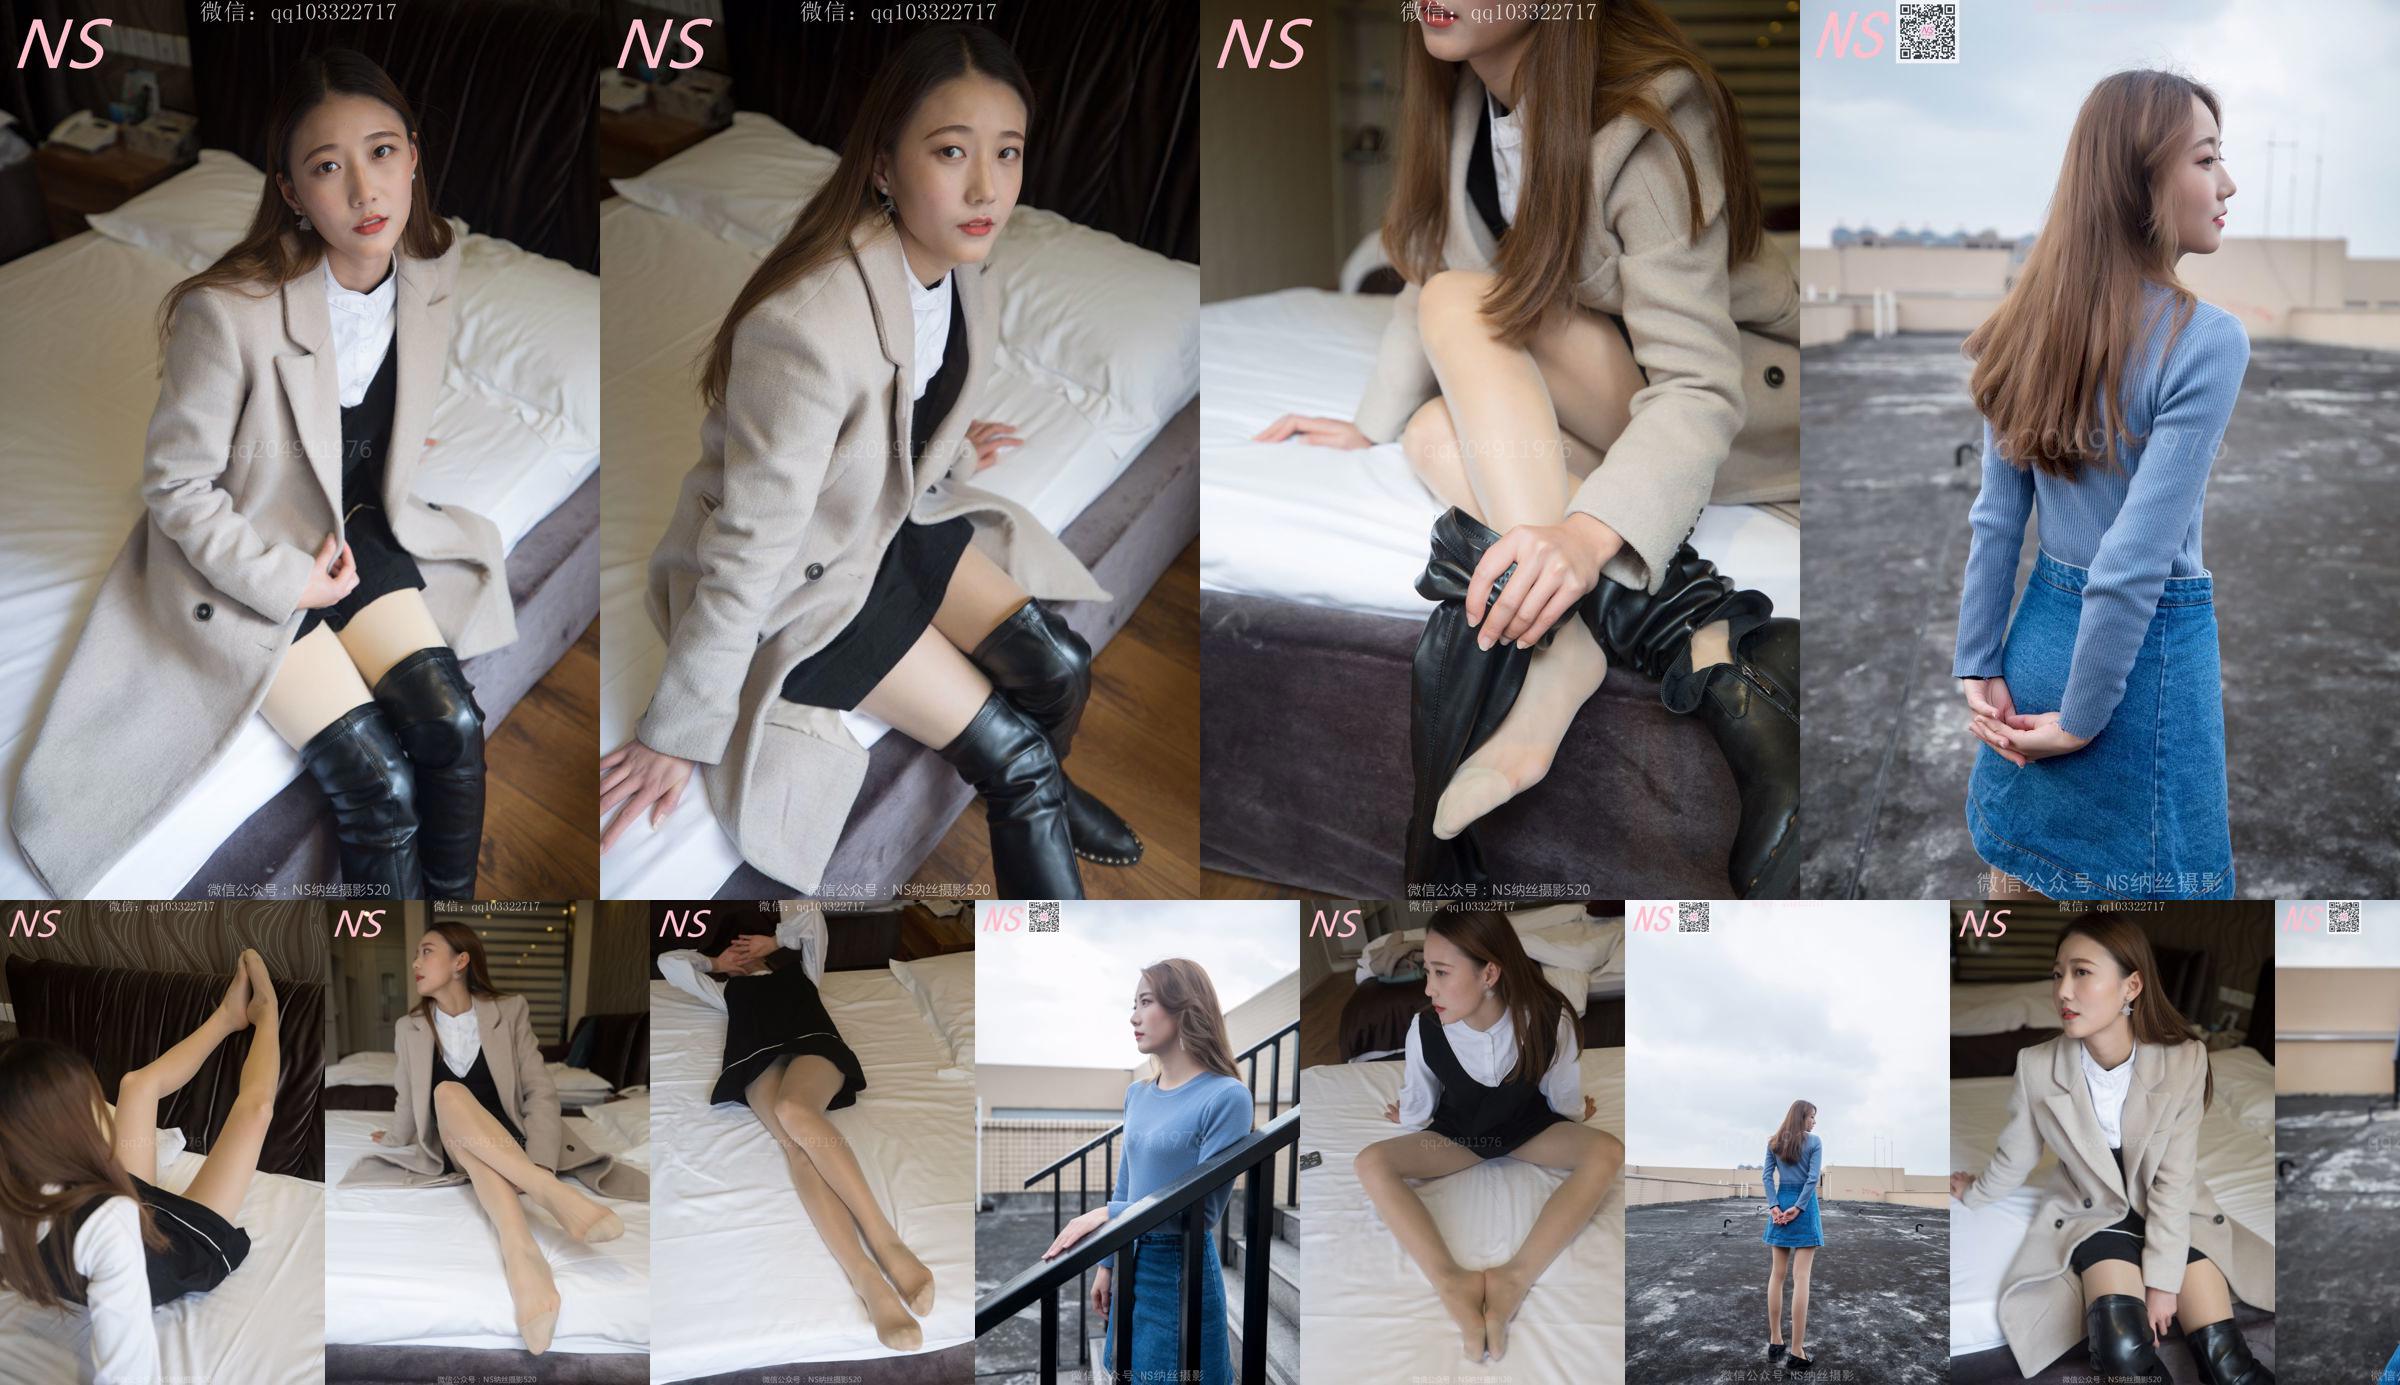 Shu Yi "Cuộc gặp gỡ với đôi giày cao cổ" [Nass Photography] No.7aa551 Trang 1